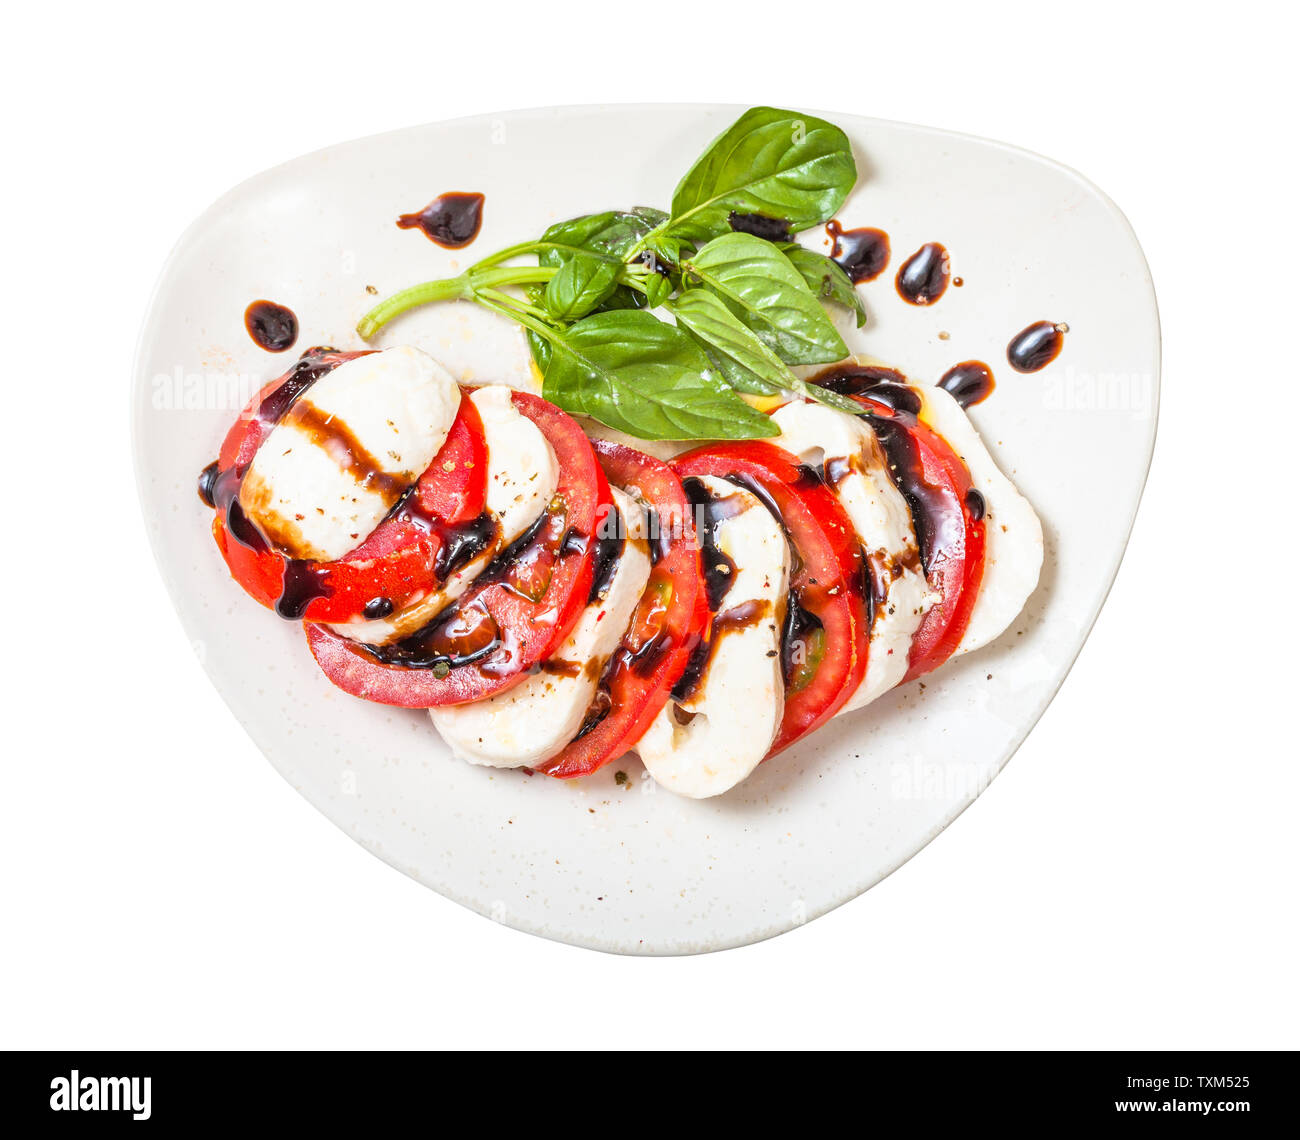 Italienische Küche Insalata Caprese (Caprese) - Blick von oben auf die in Scheiben geschnittenen Mozzarella und Tomaten mit Basilikum Zweig, gewürzt durch Olivenöl und Balsamico Stockfoto